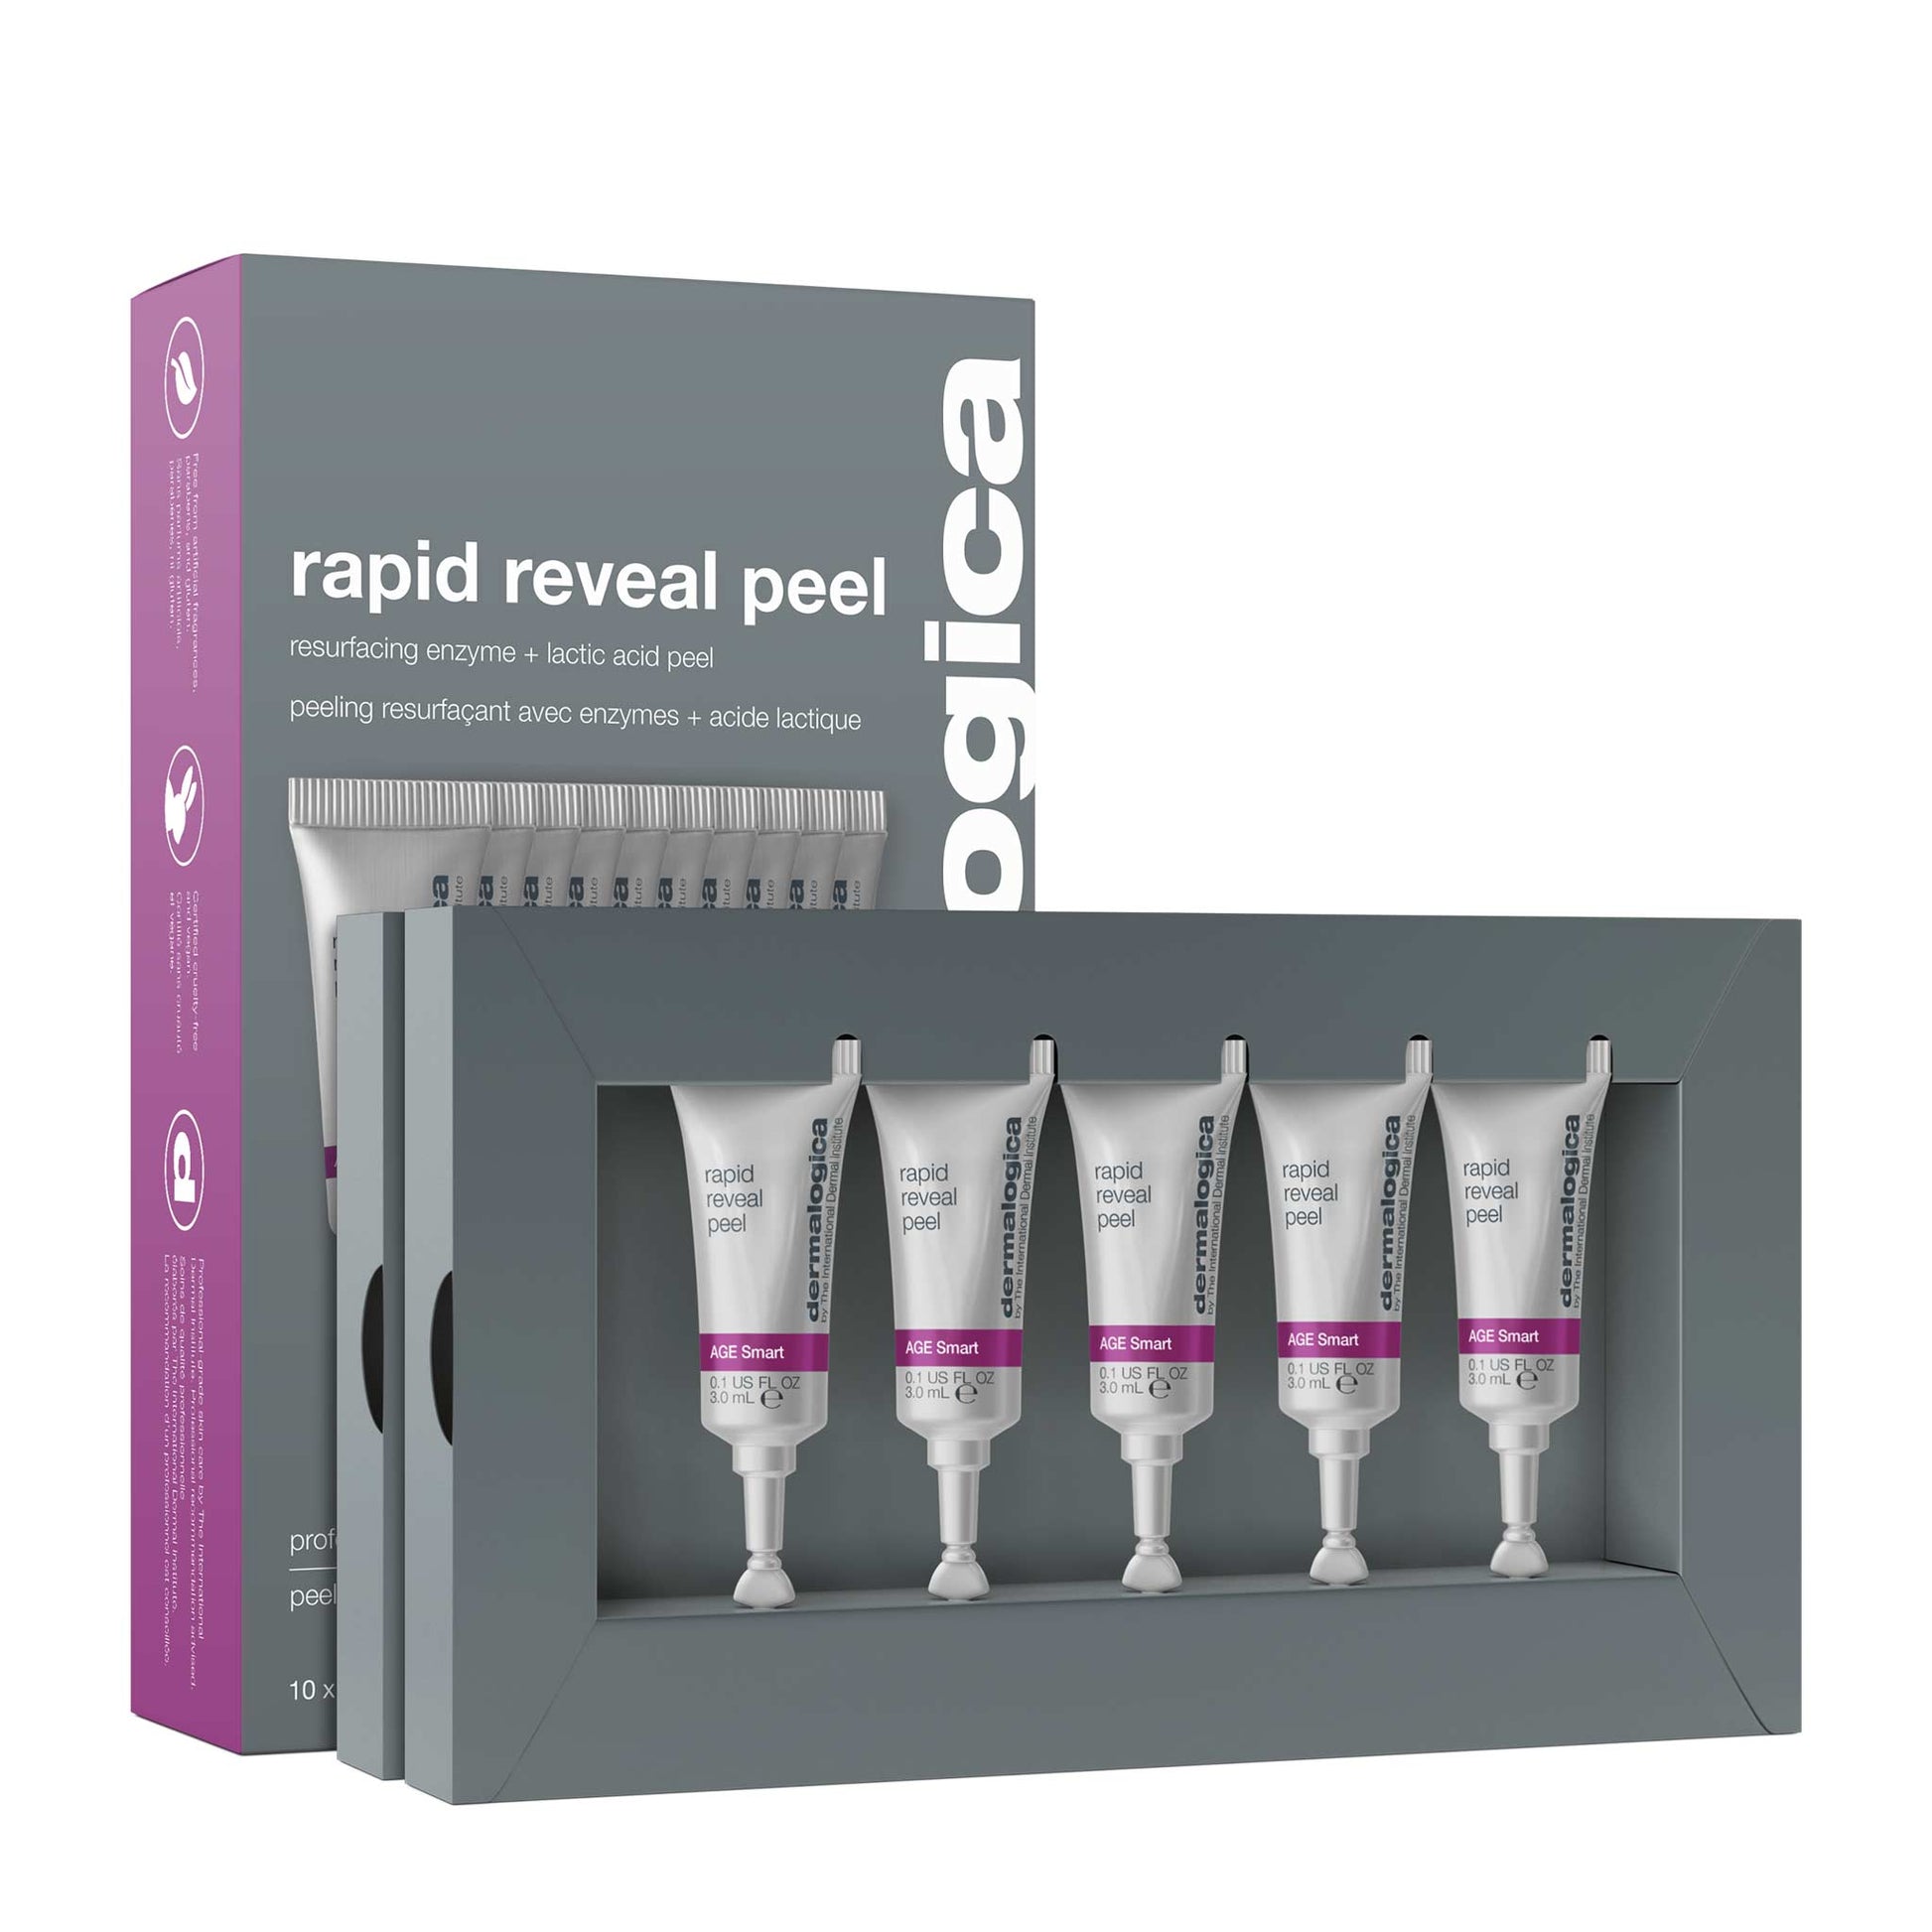 rapid reveal peel packaging